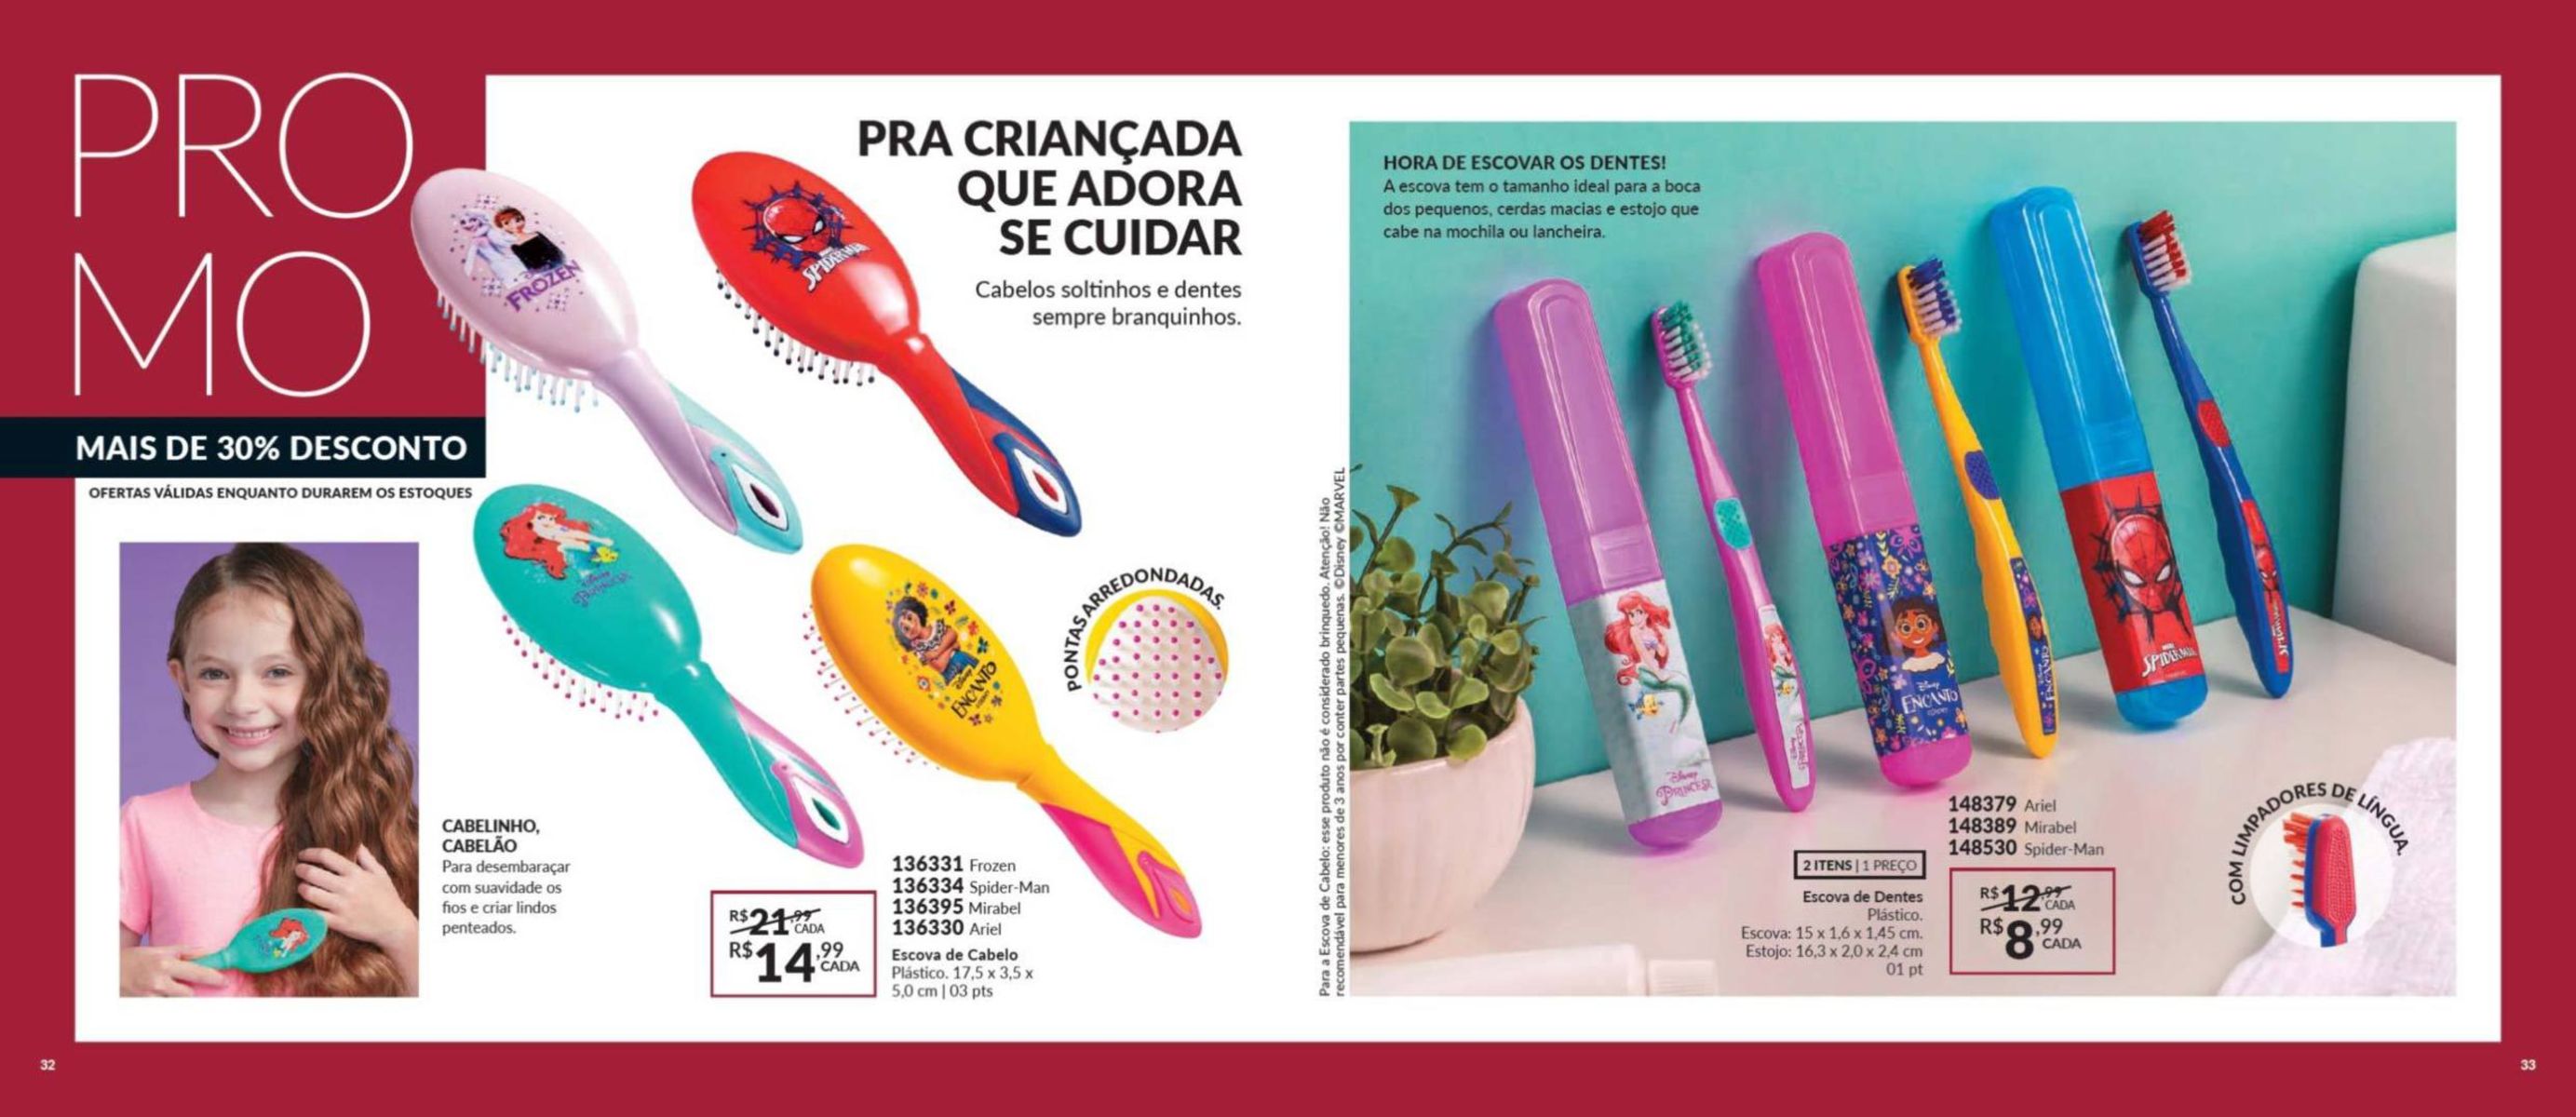 Escova de cabelo e escova de dentes plásticas para crianças